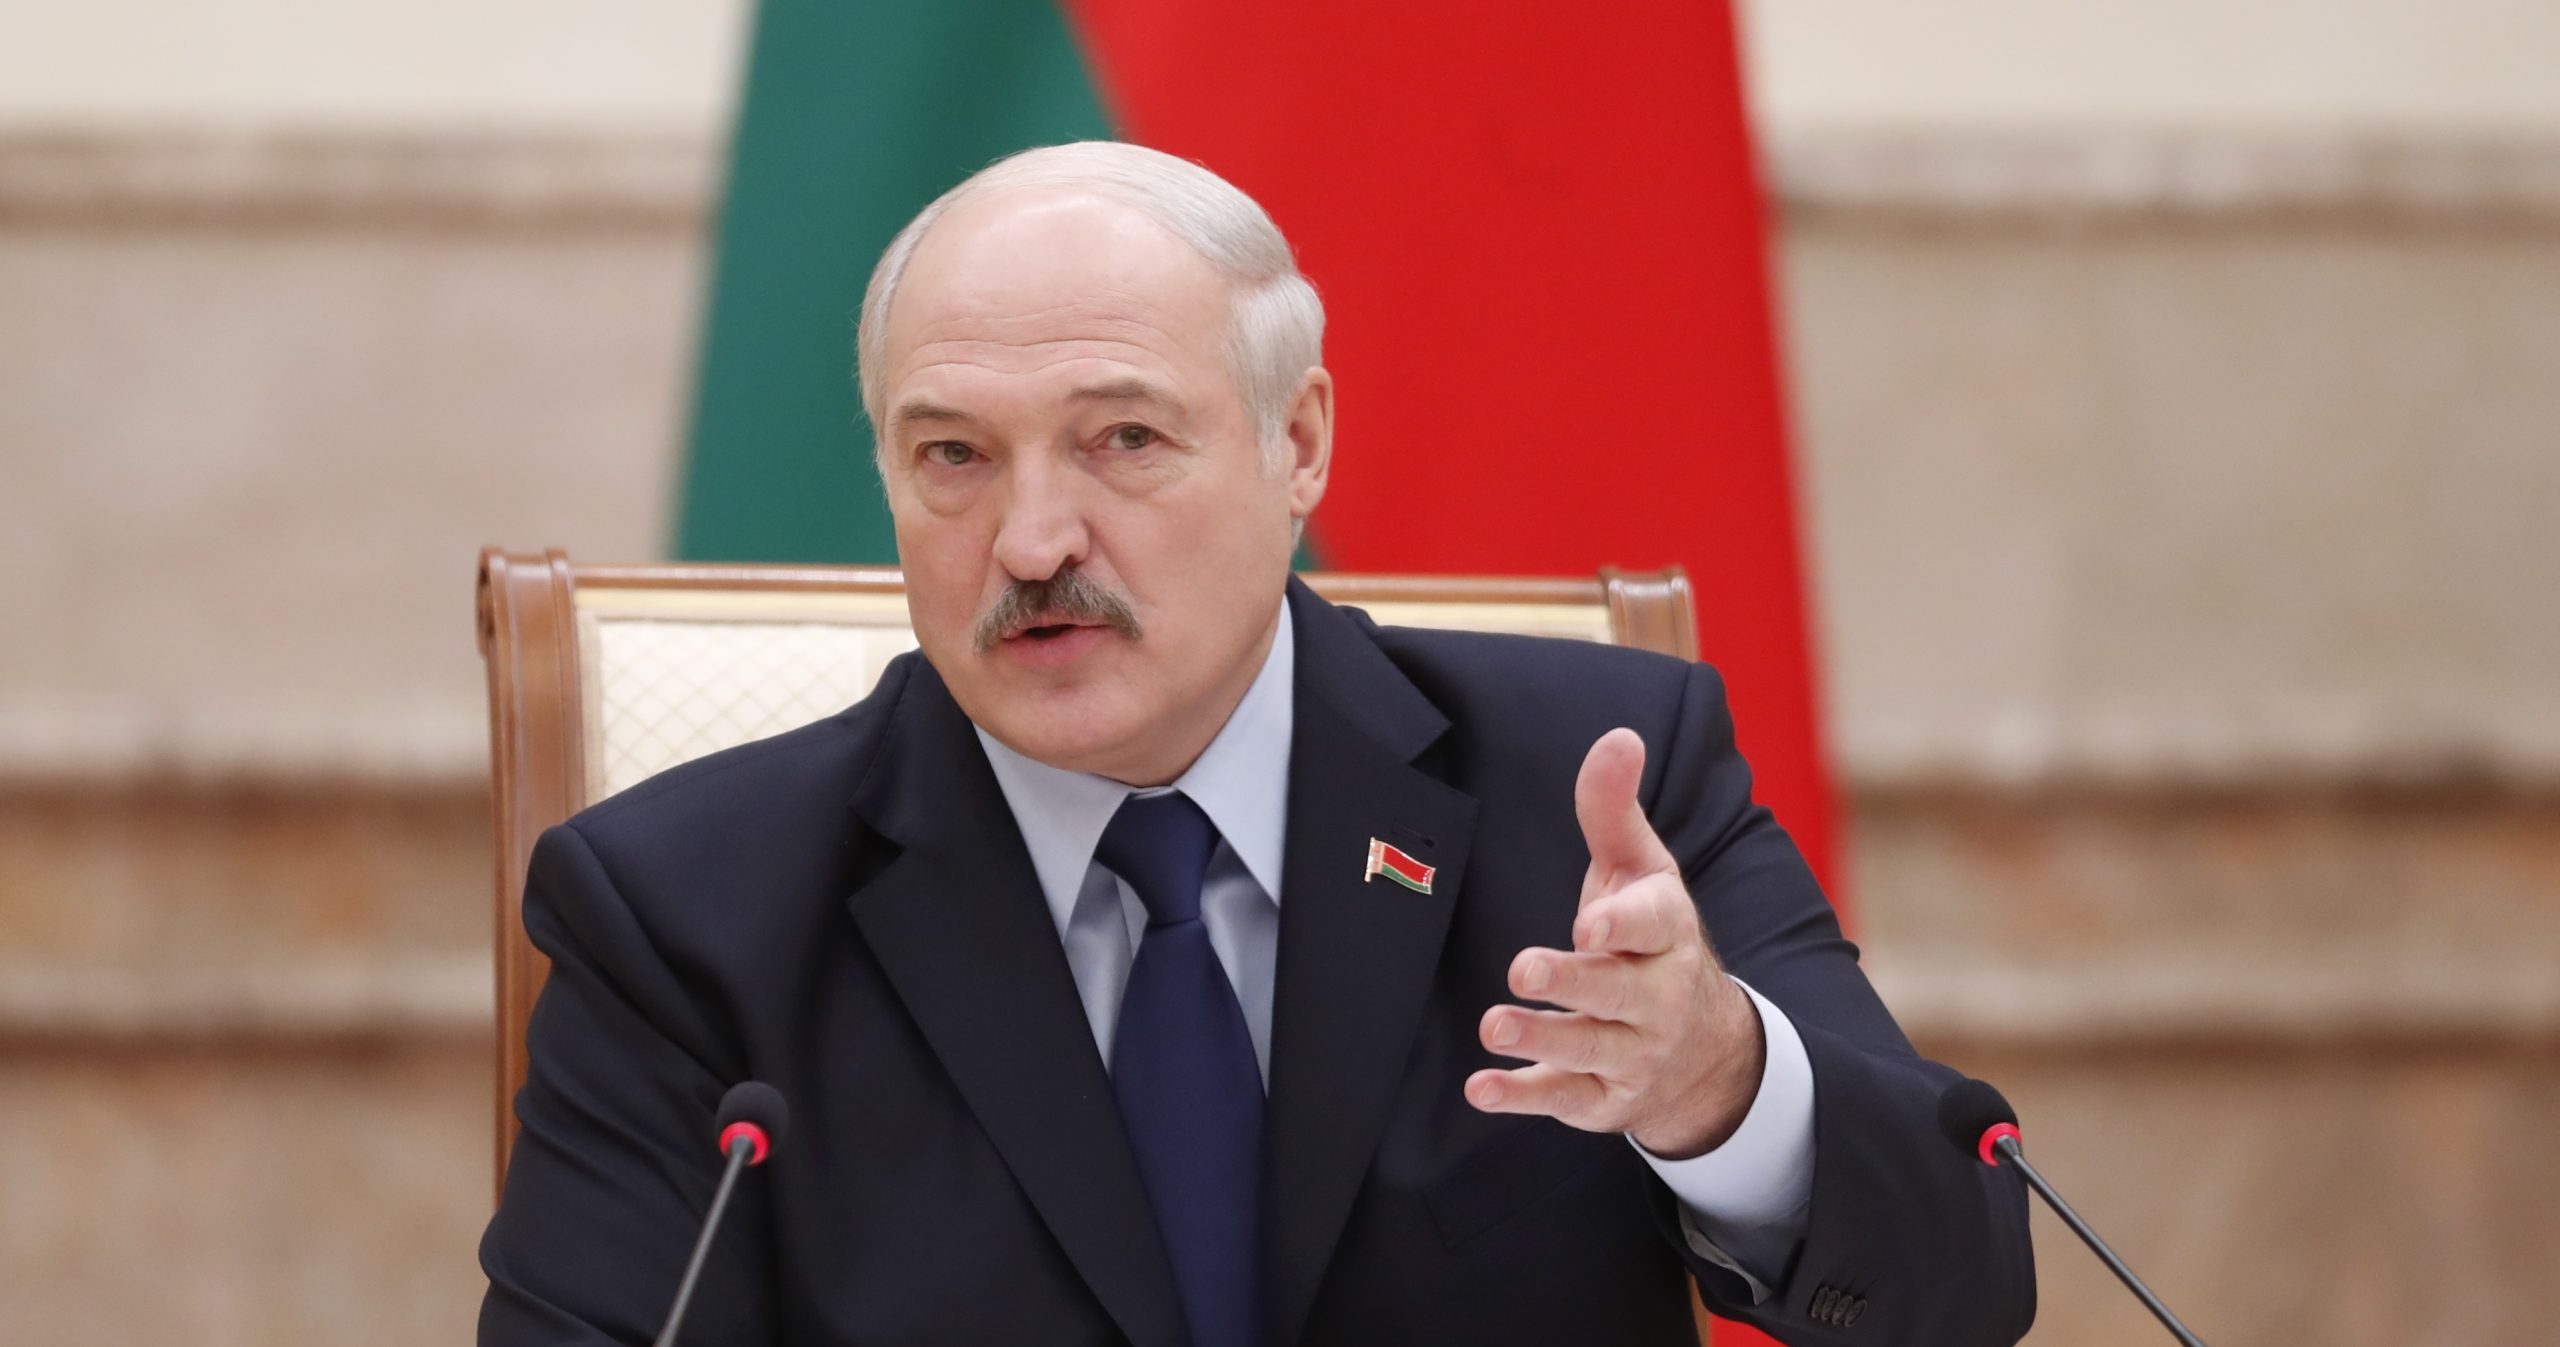 Κρατική τηλεόραση Λευκορωσίας: «Σύμβουλος του Τ.Μπάιντεν σχετίζεται με τα σχέδια πραξικοπήματος»